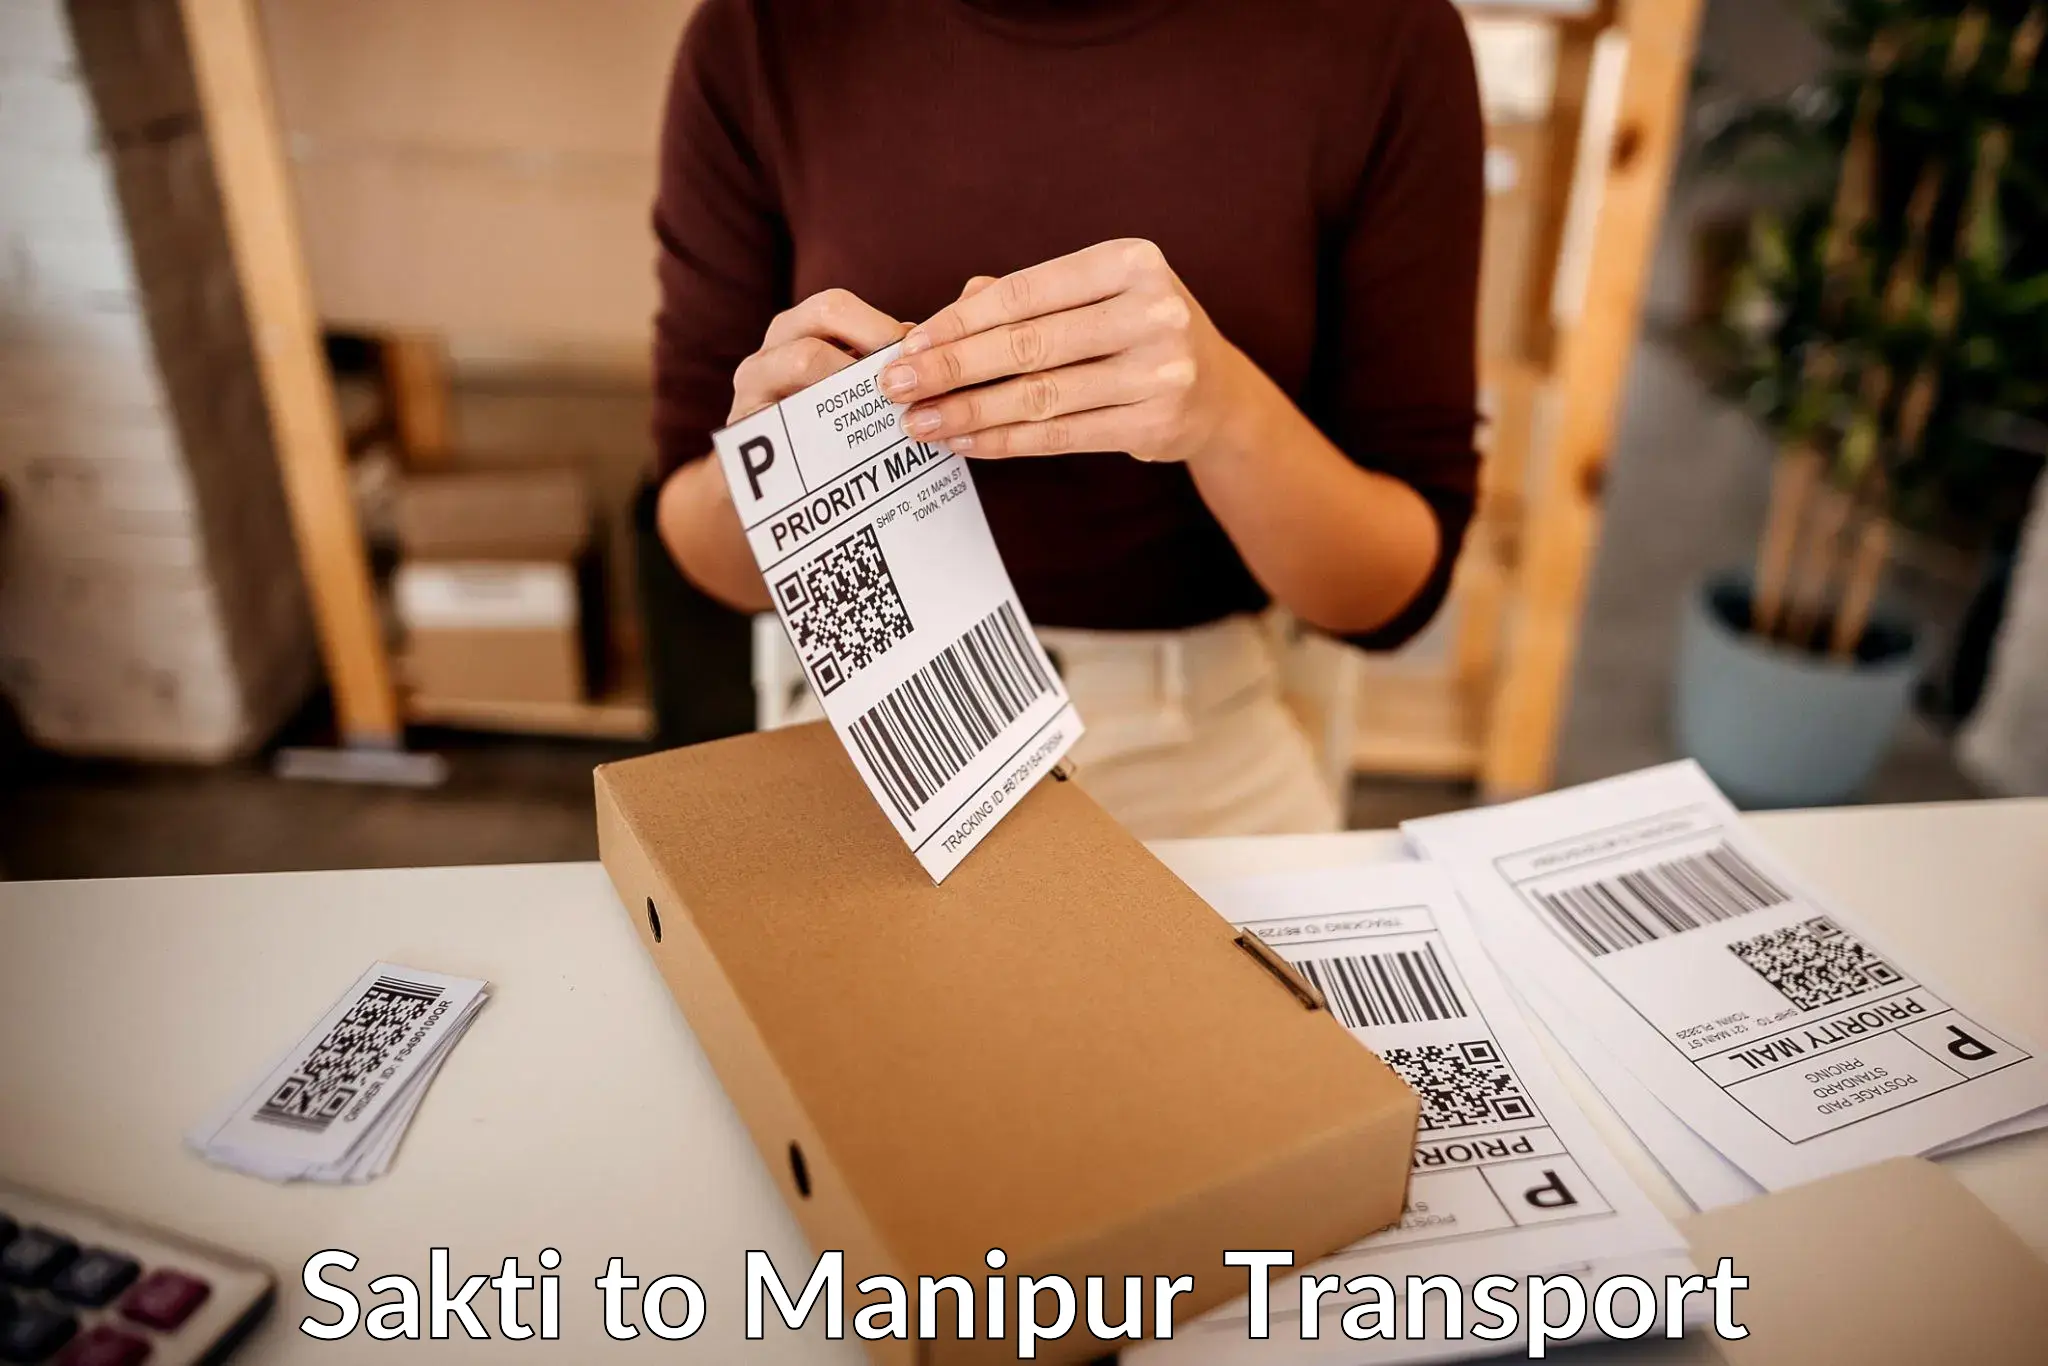 Container transport service Sakti to Kaptipada